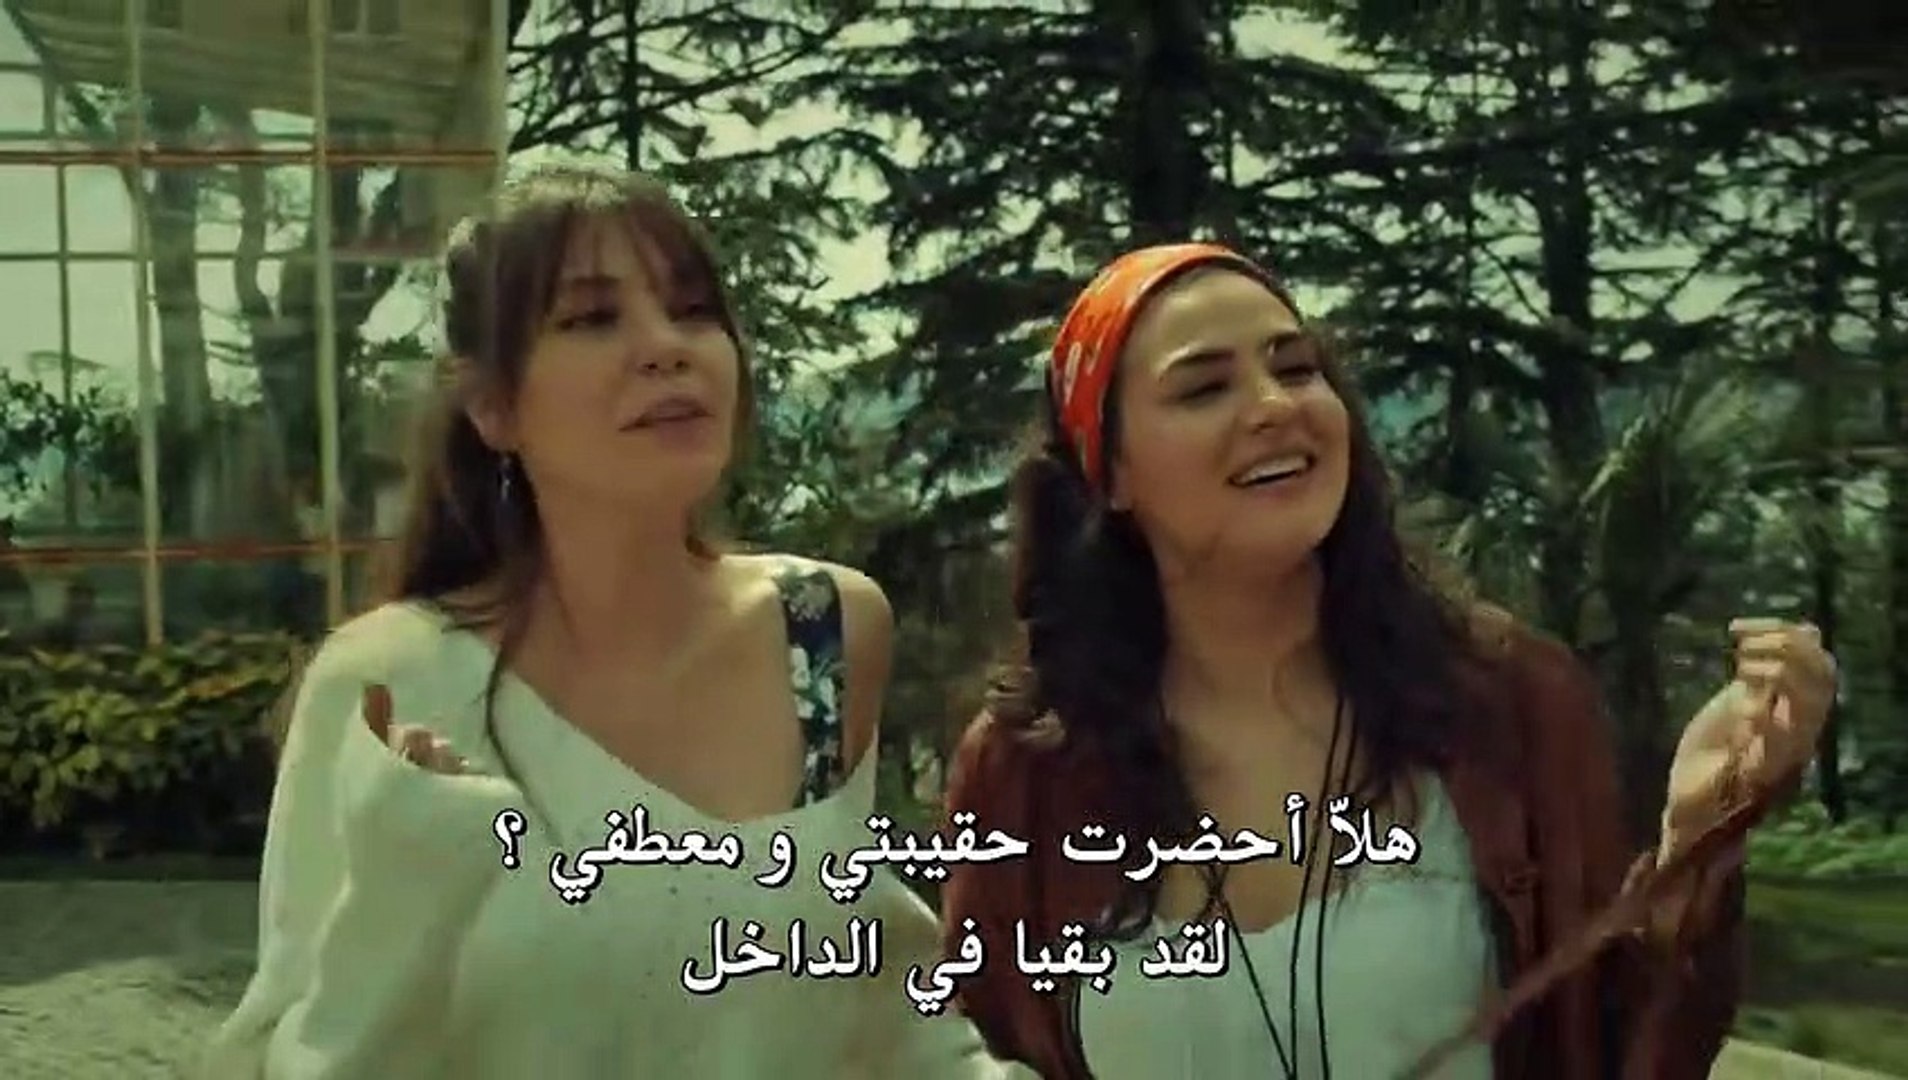 مسلسل عروس اسطنبول الموسم الثاني الحلقة 44 كاملة القسم 3 مترجمة للعربية -  Video Dailymotion - فيديو Dailymotion